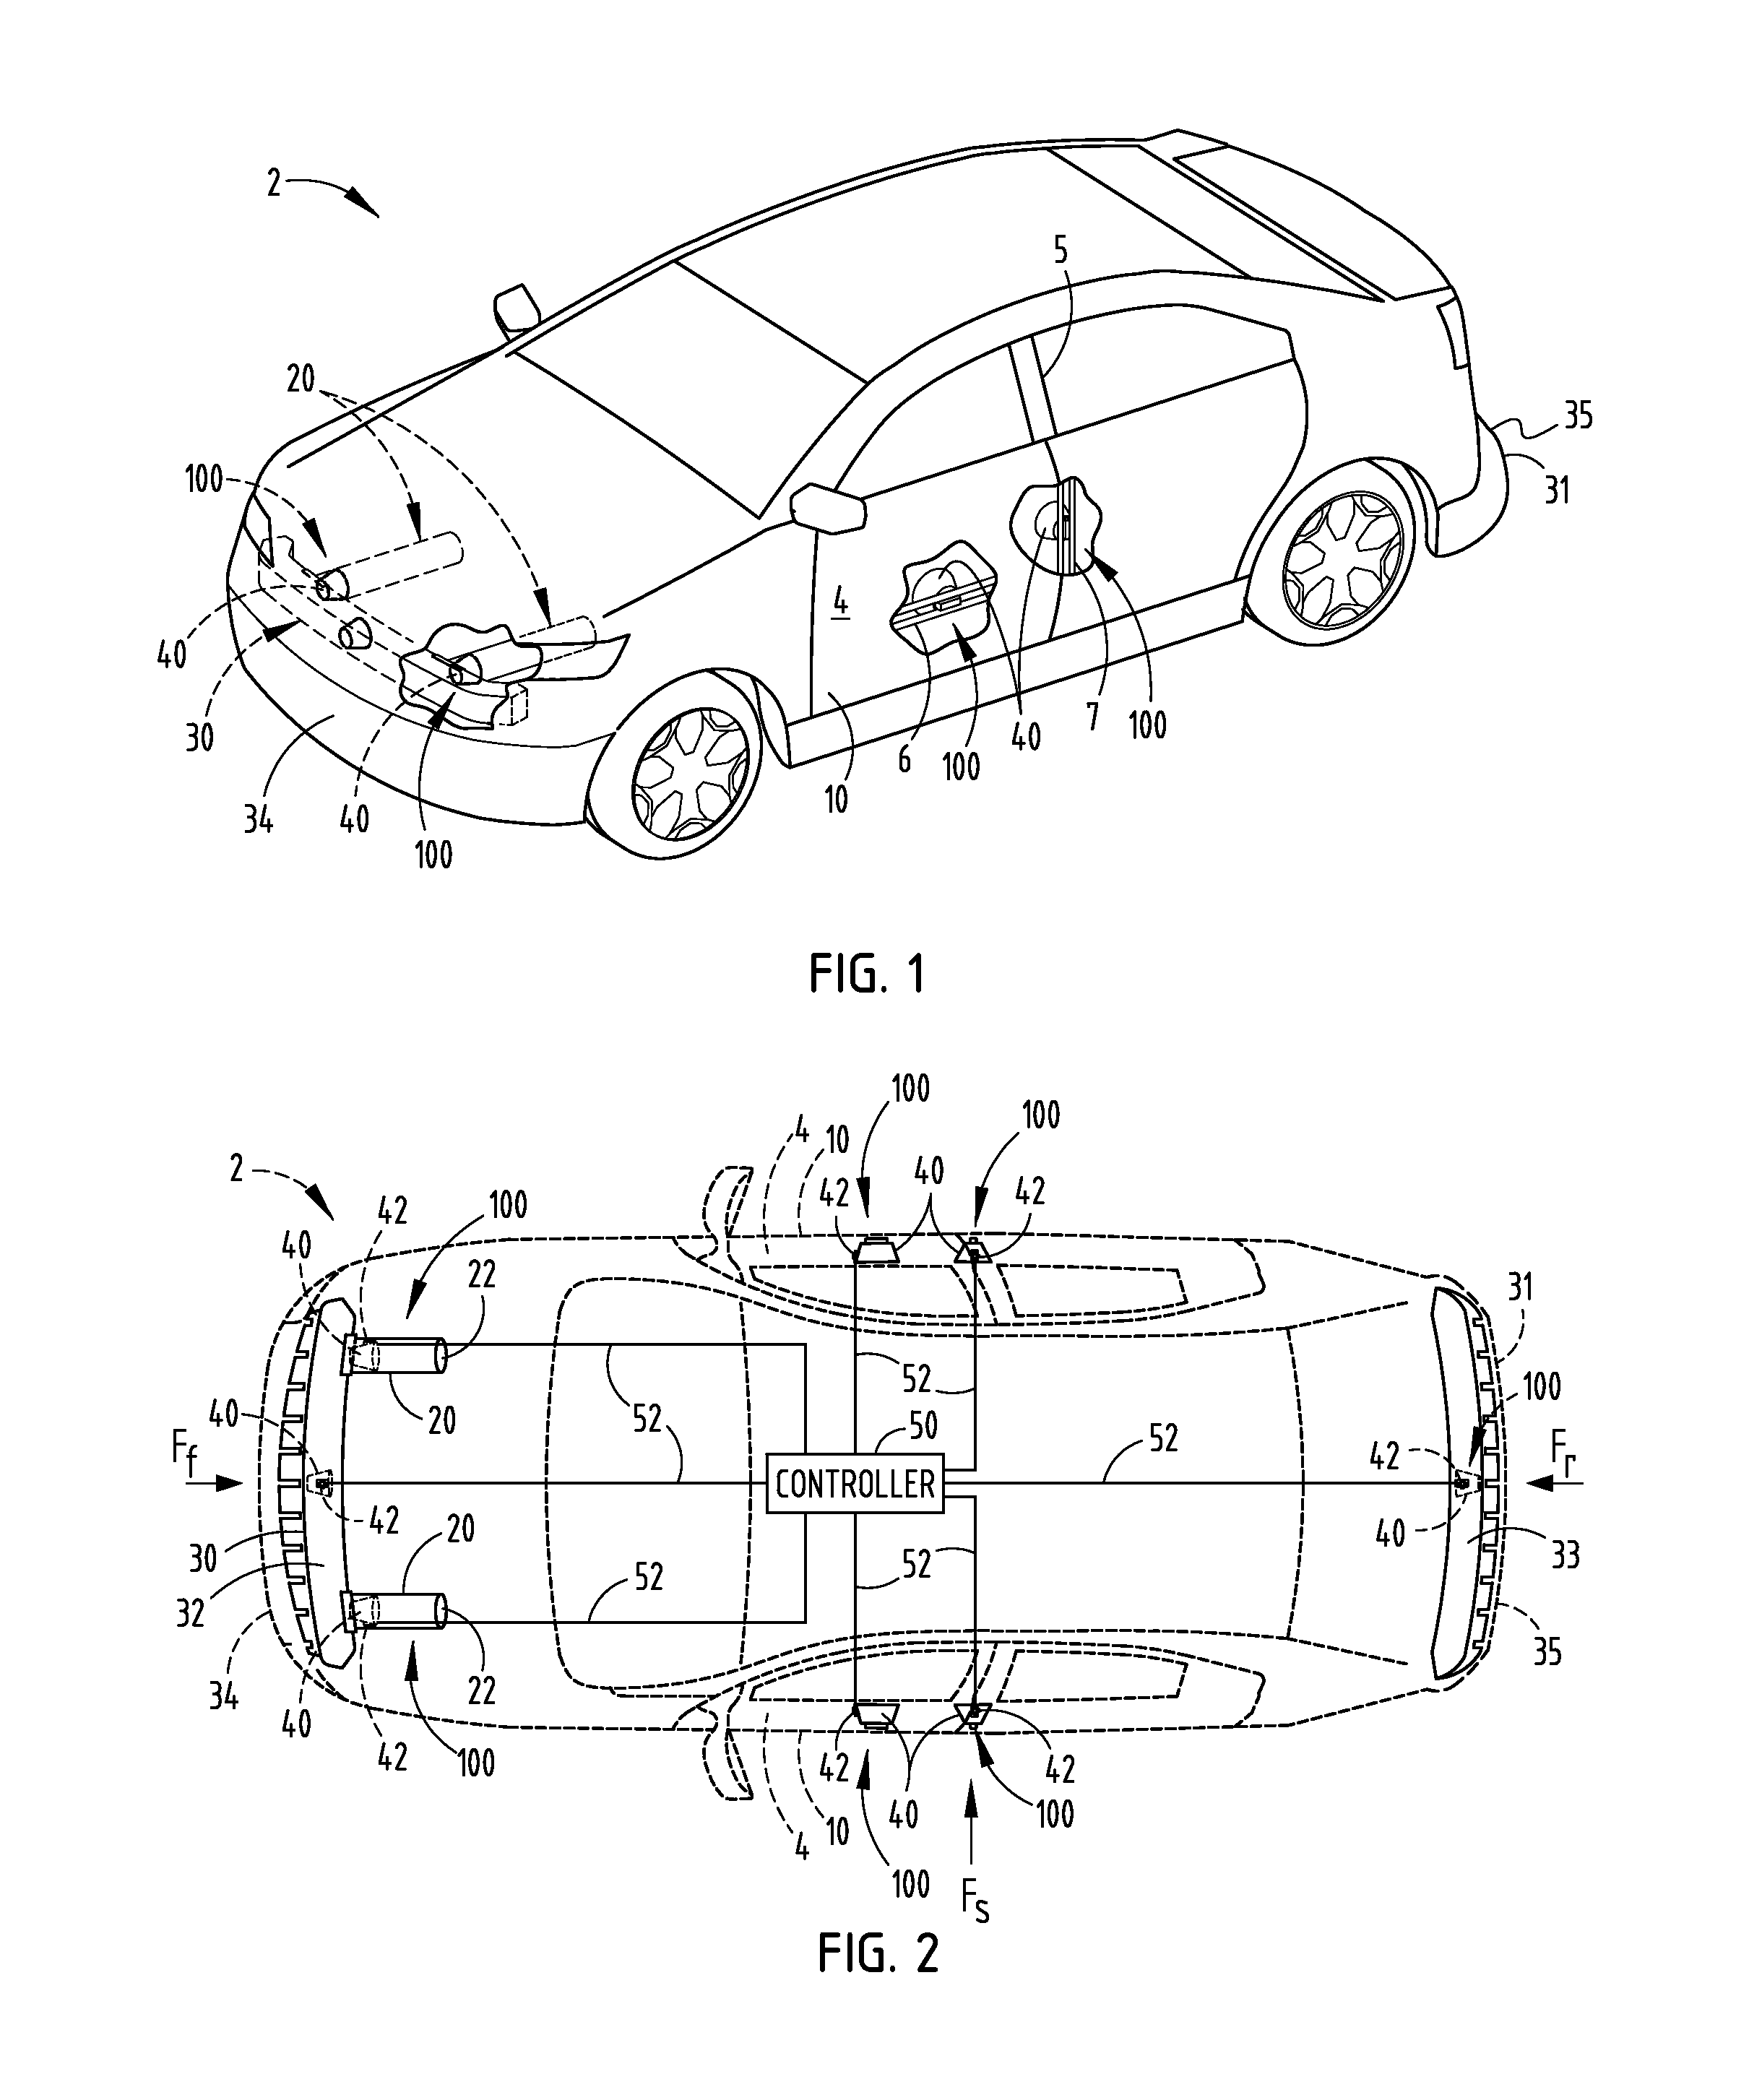 Vehicle impact sensing system